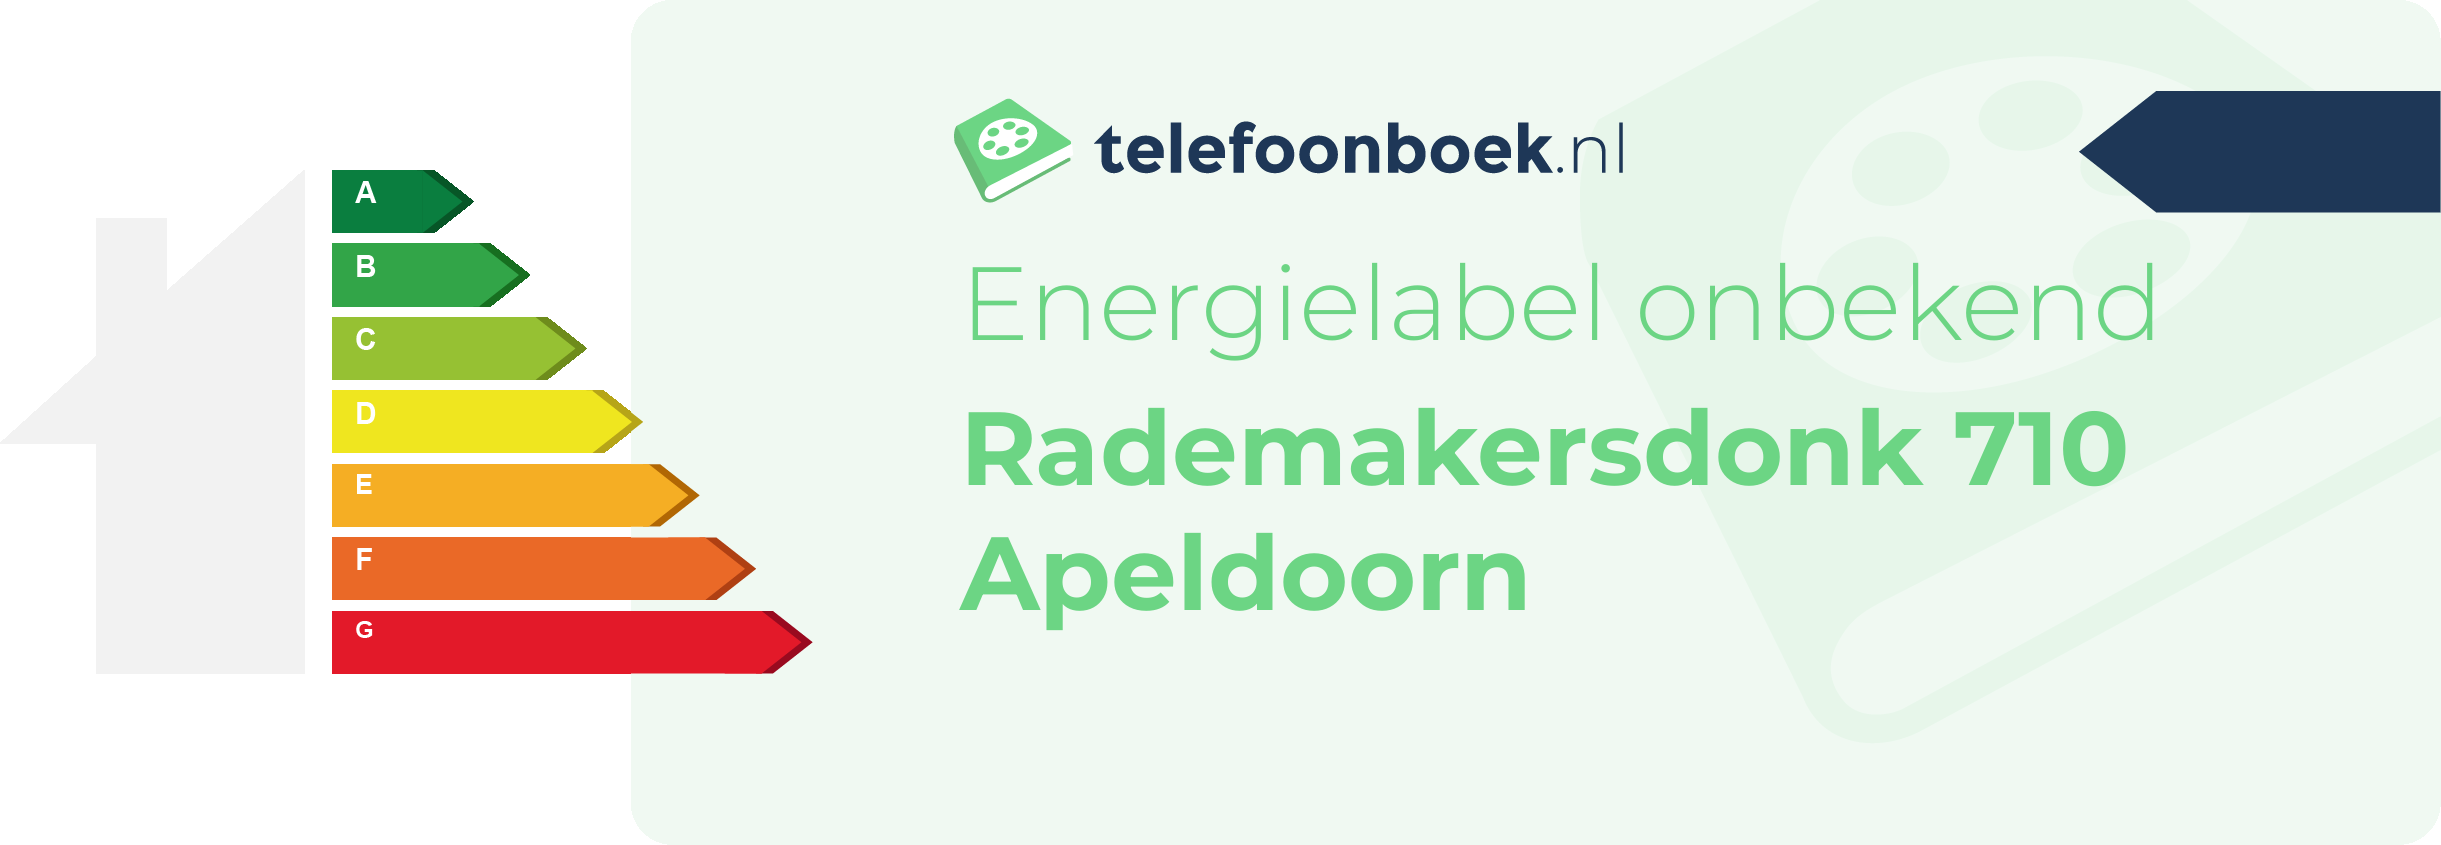 Energielabel Rademakersdonk 710 Apeldoorn